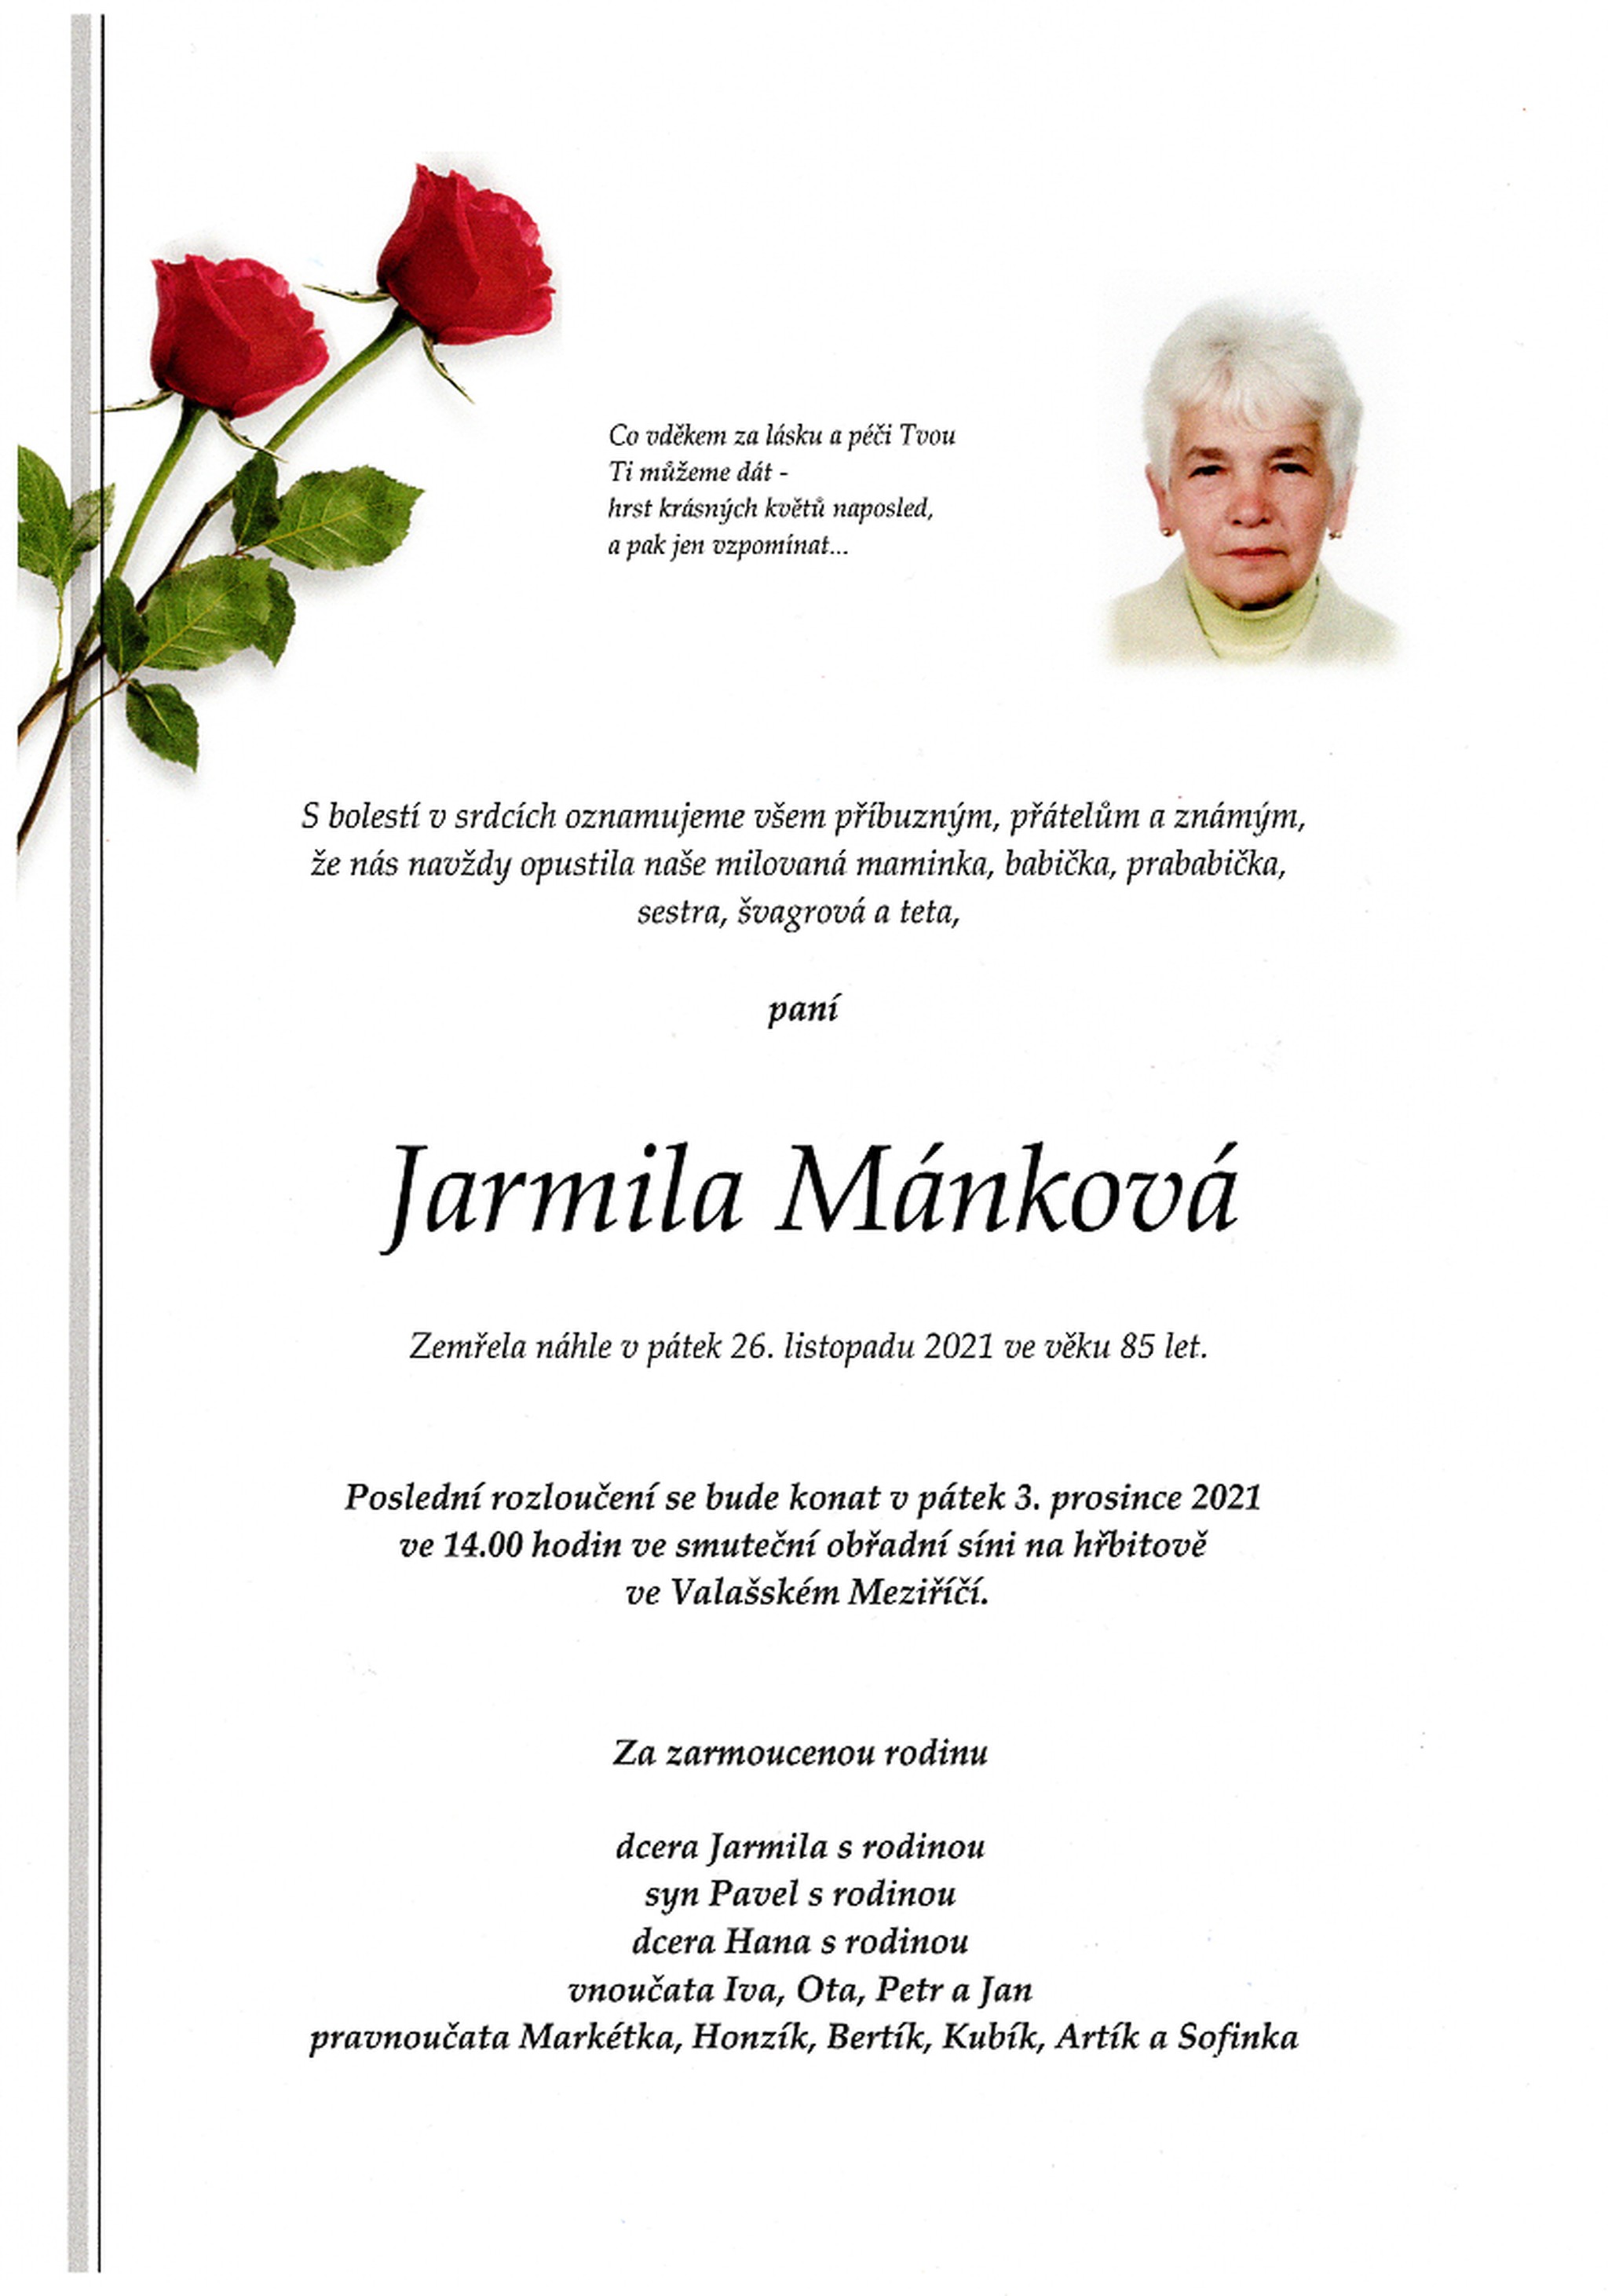 Jarmila Mánková